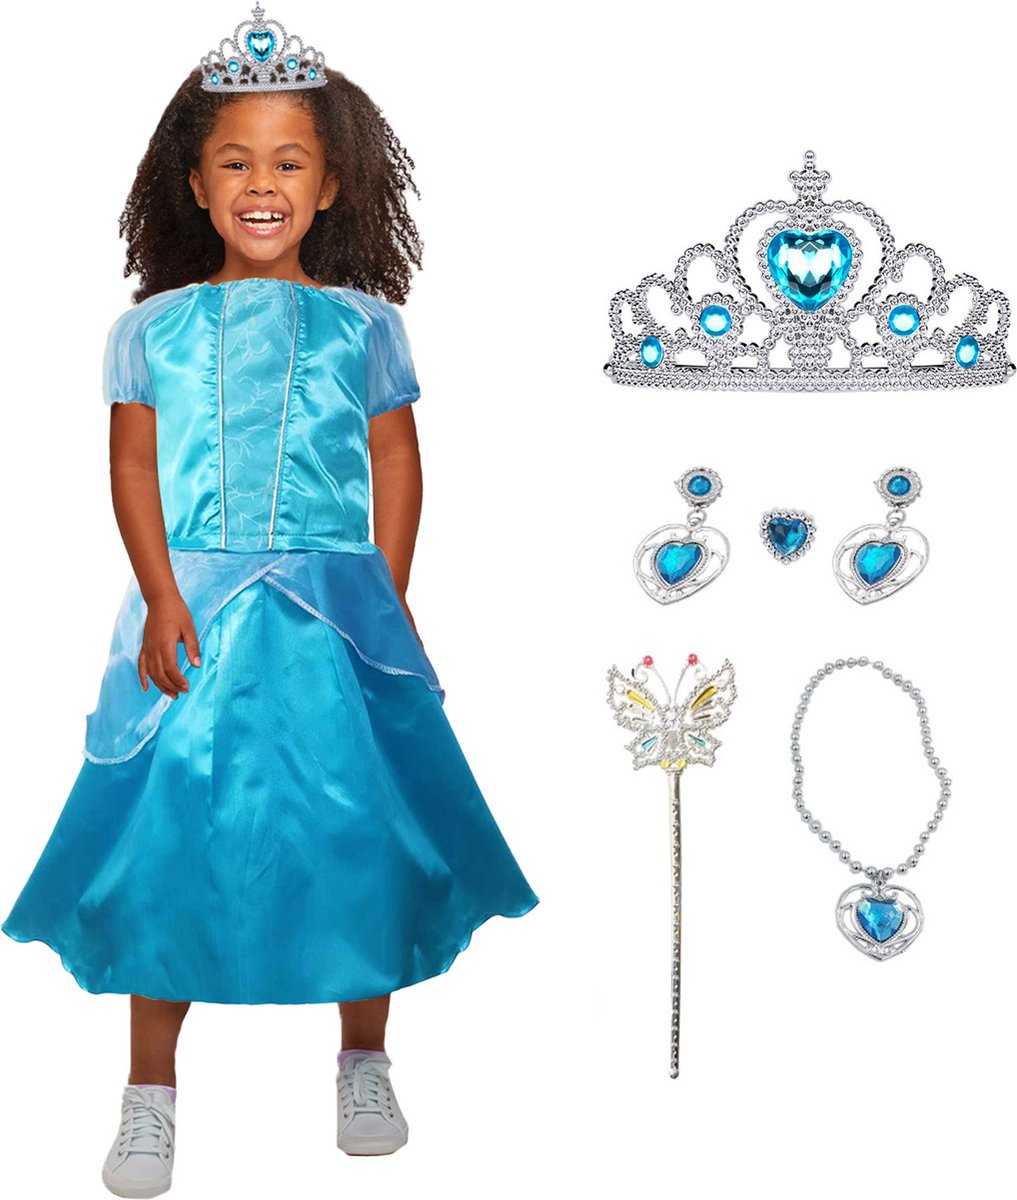 Allerion Prinsessenjurk Meisje Blauw - Verkleedkleren Elsa Frozen - Blauw Prinsessen Jurk - Inclusief Accessoires - Maat 100-140cm / 3 tot 8 jaar